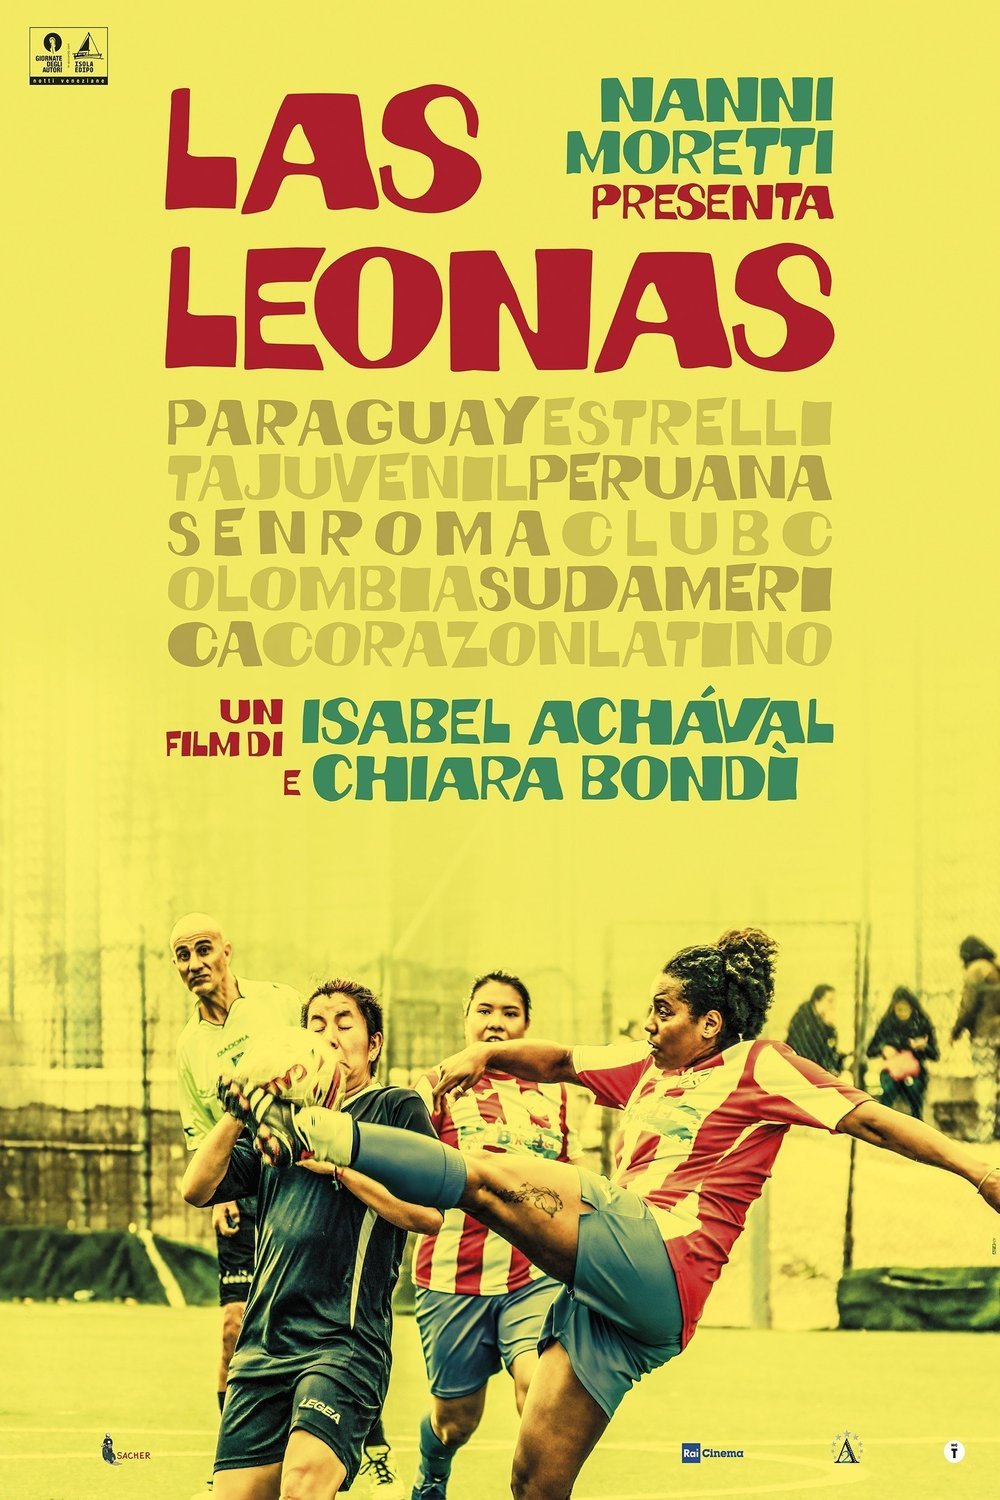 Poster of the movie Las Leonas